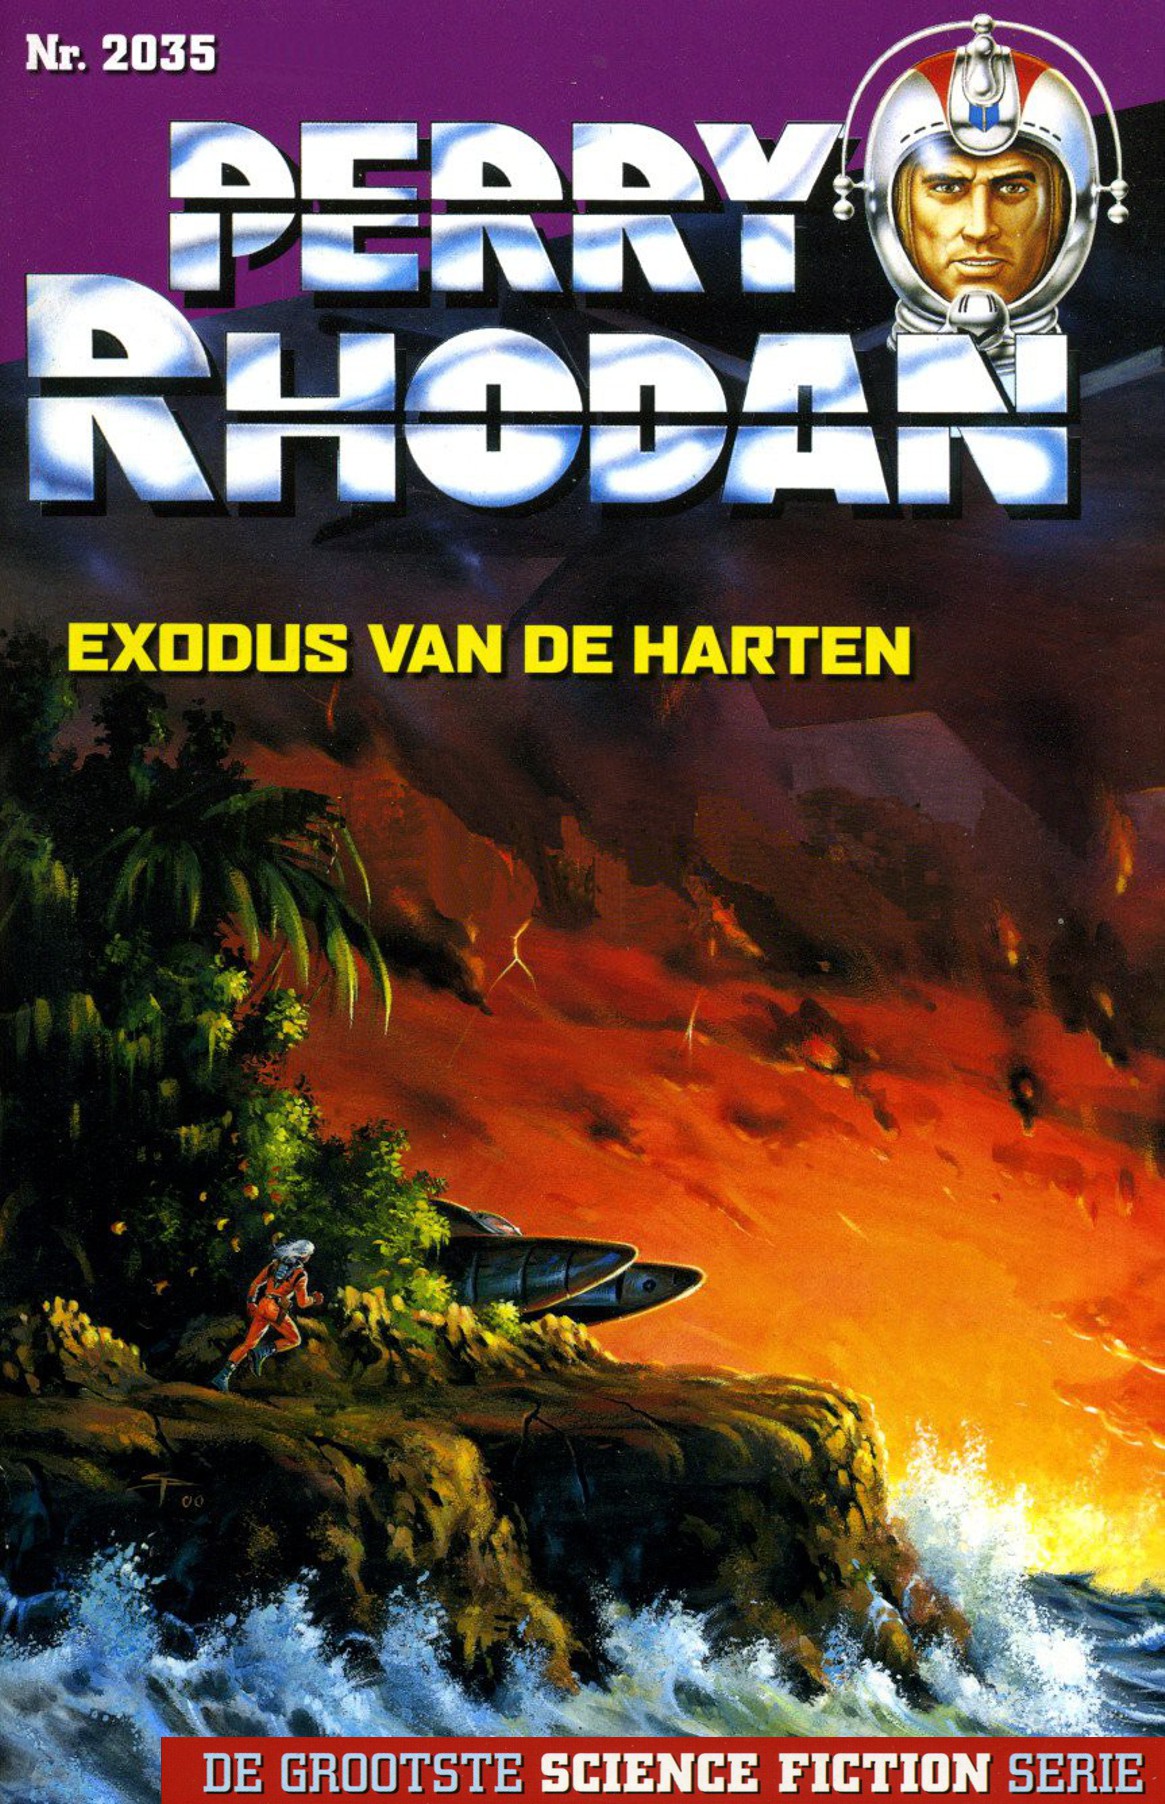 Perry Rhodan 2035 - Exodus van de harten